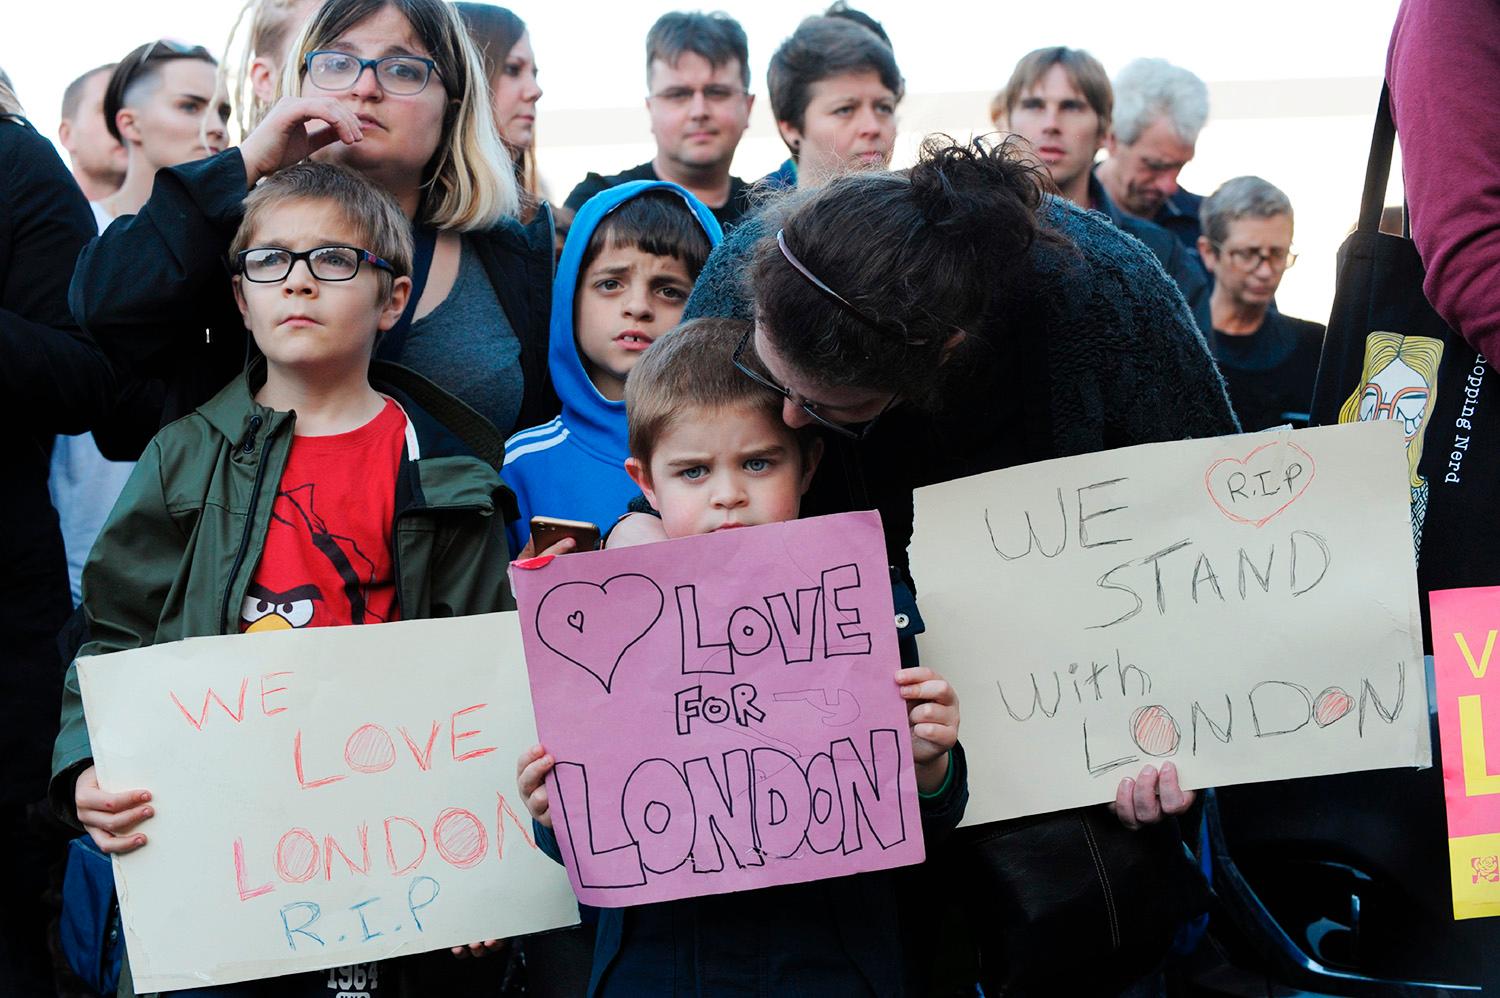 James Little, 5 år, visar sina sympatier för offren för i Londons terrorattacker. Carlisle, nordvästra England.